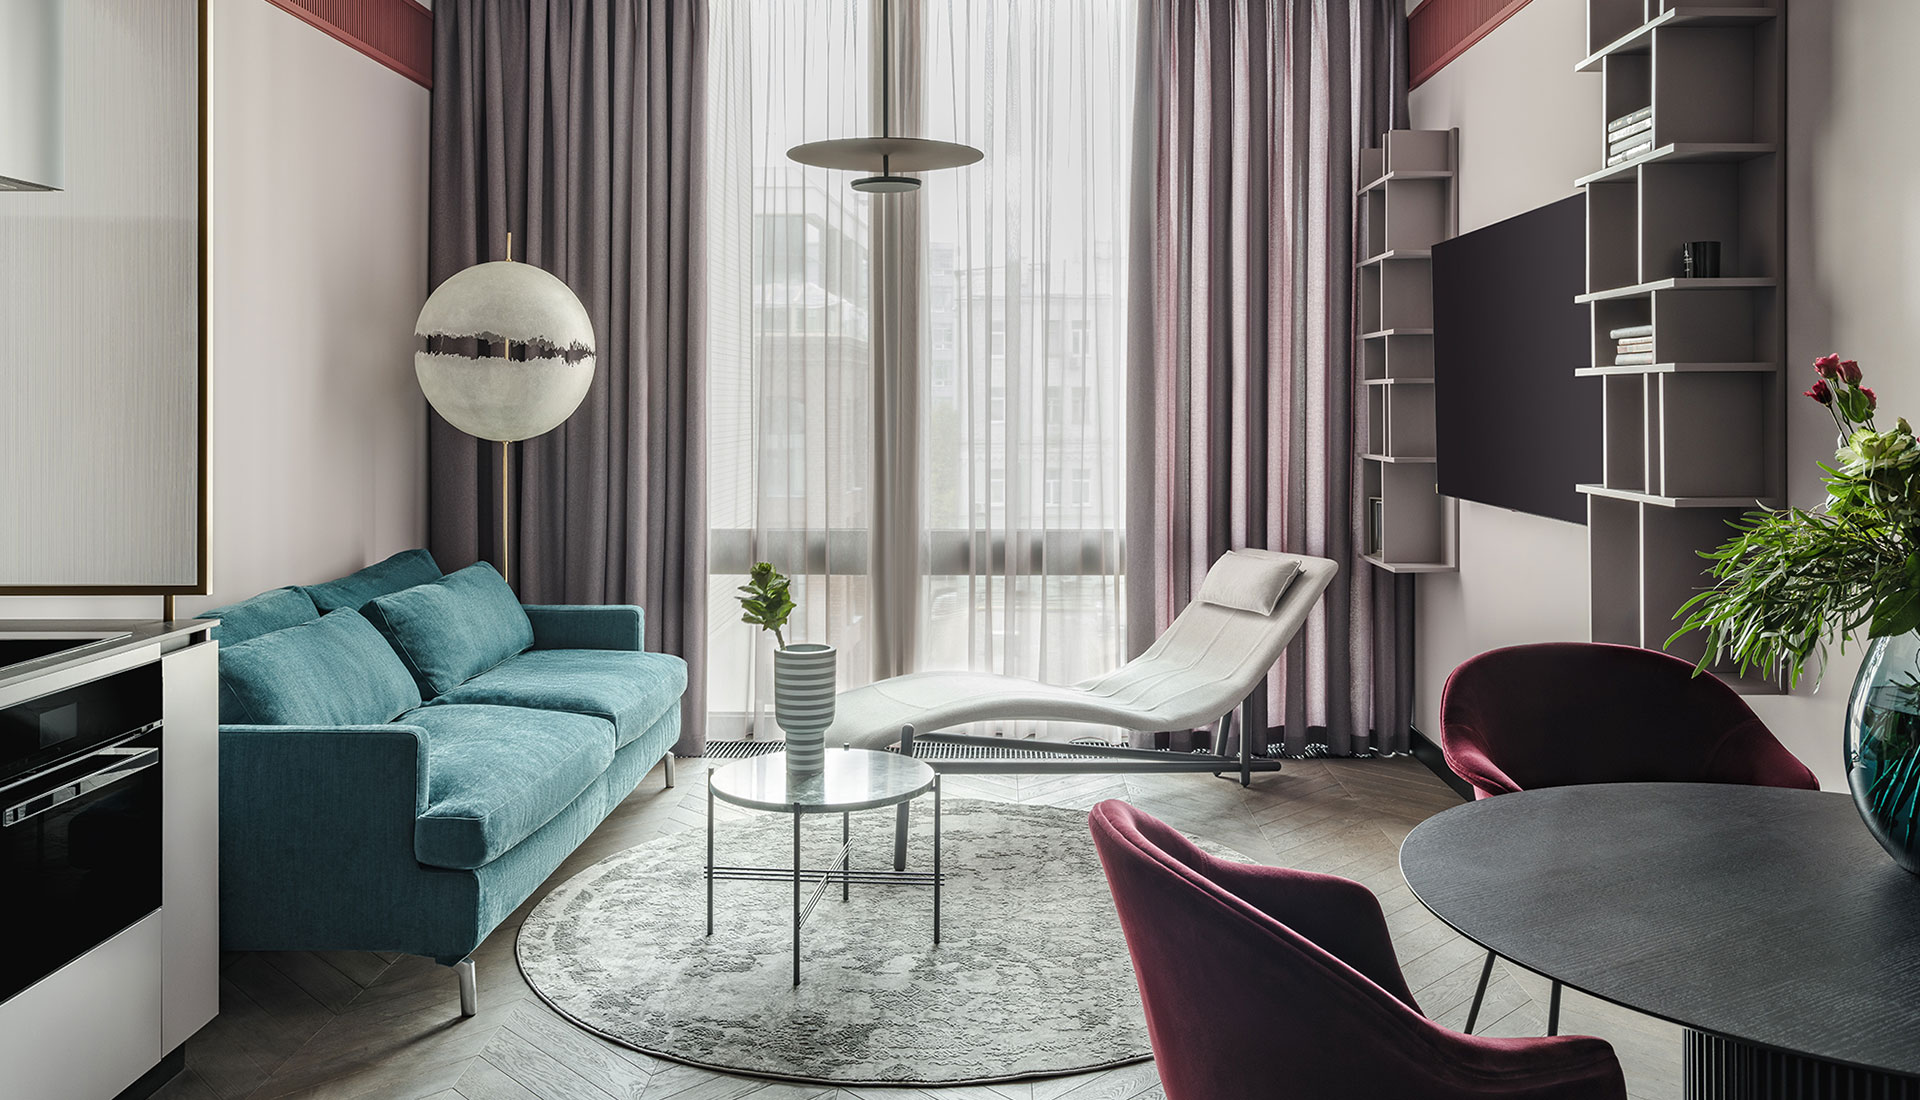 Цвет в интерьере: квартира 58 кв. метров в Москве по проекту DR House